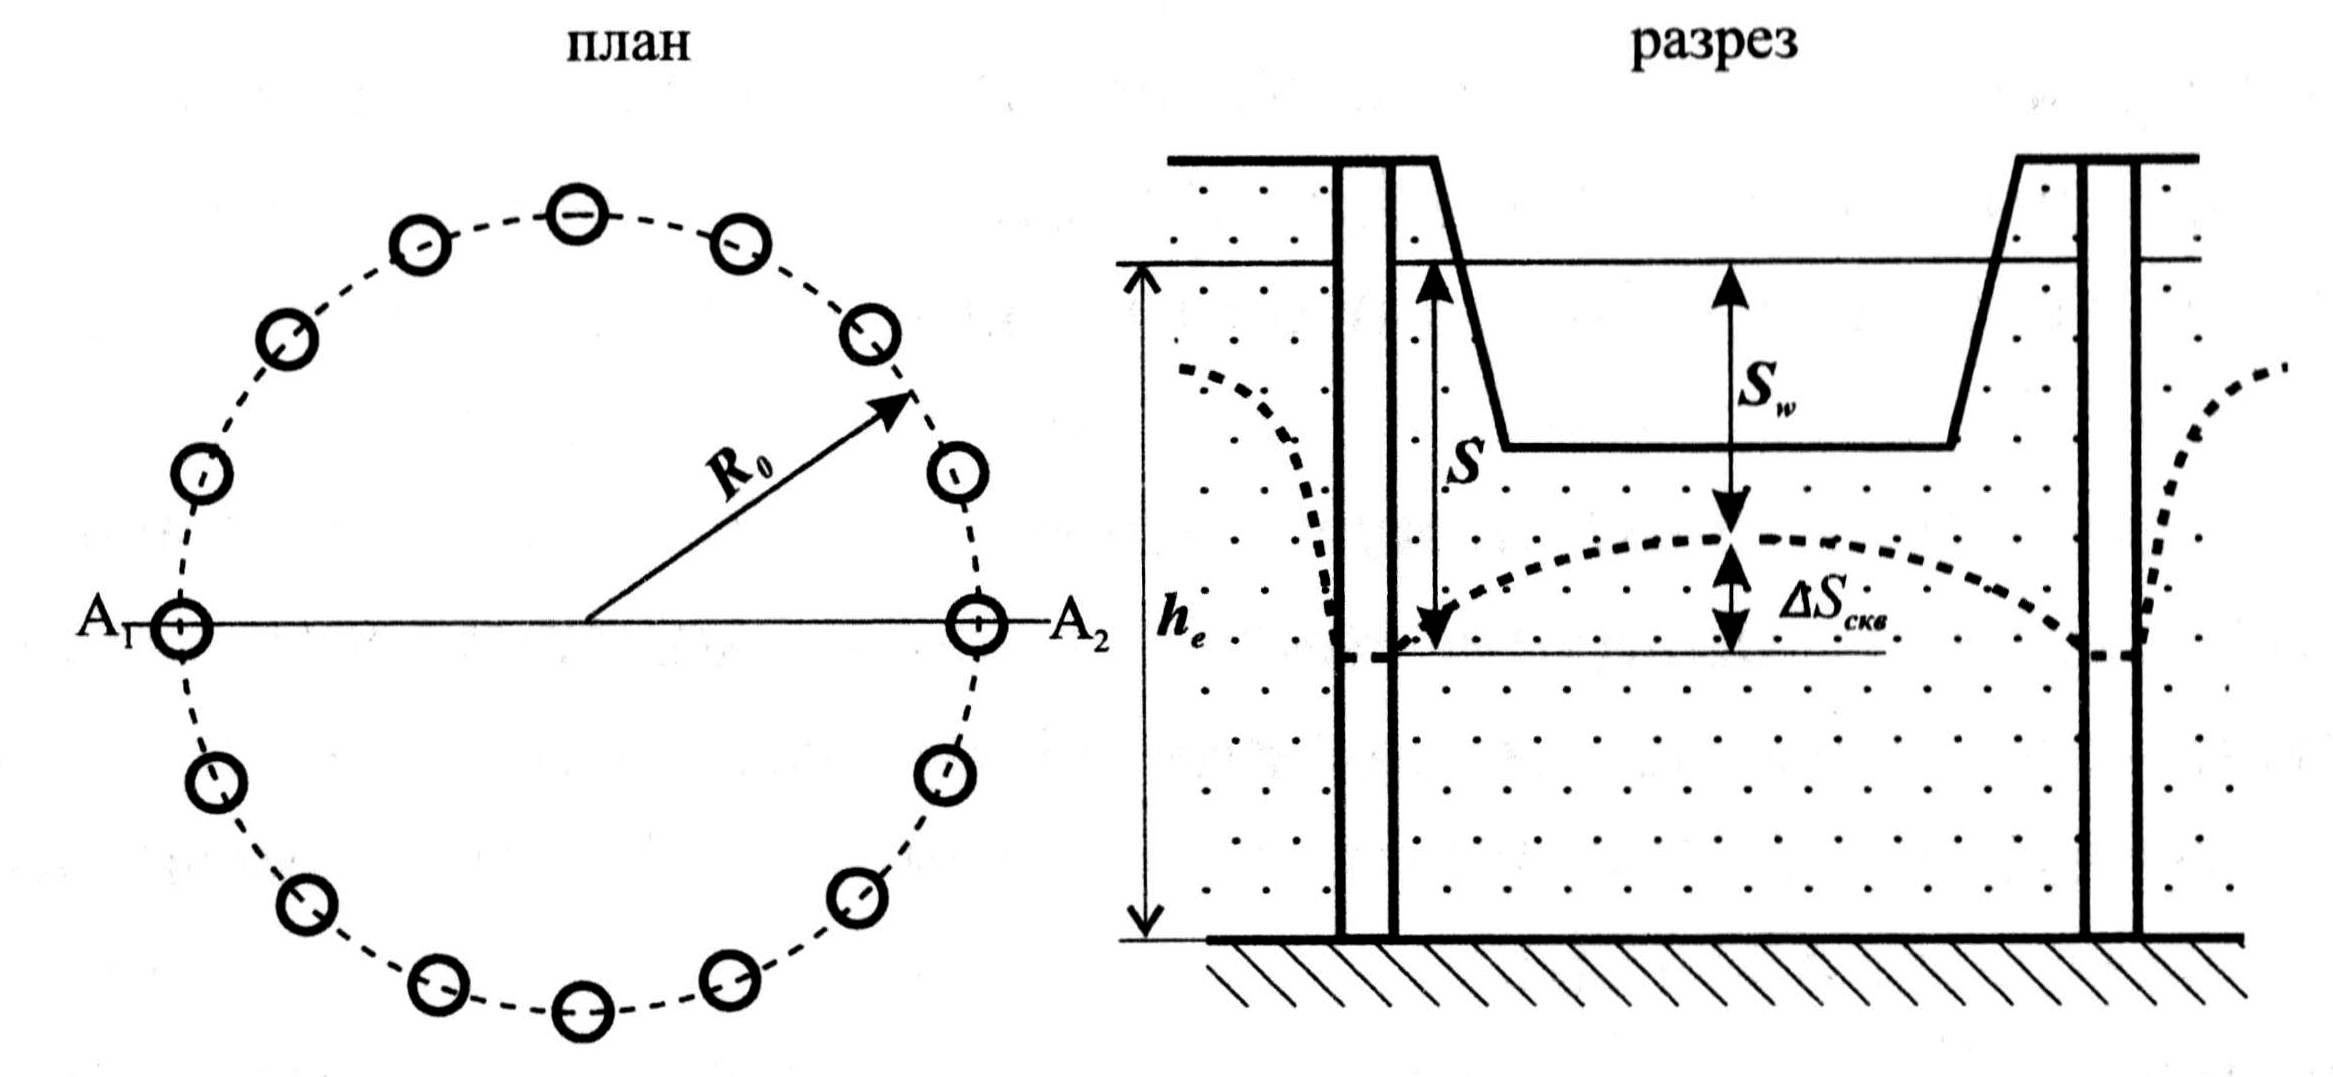 Схема осушения котлована вертикальными дренами